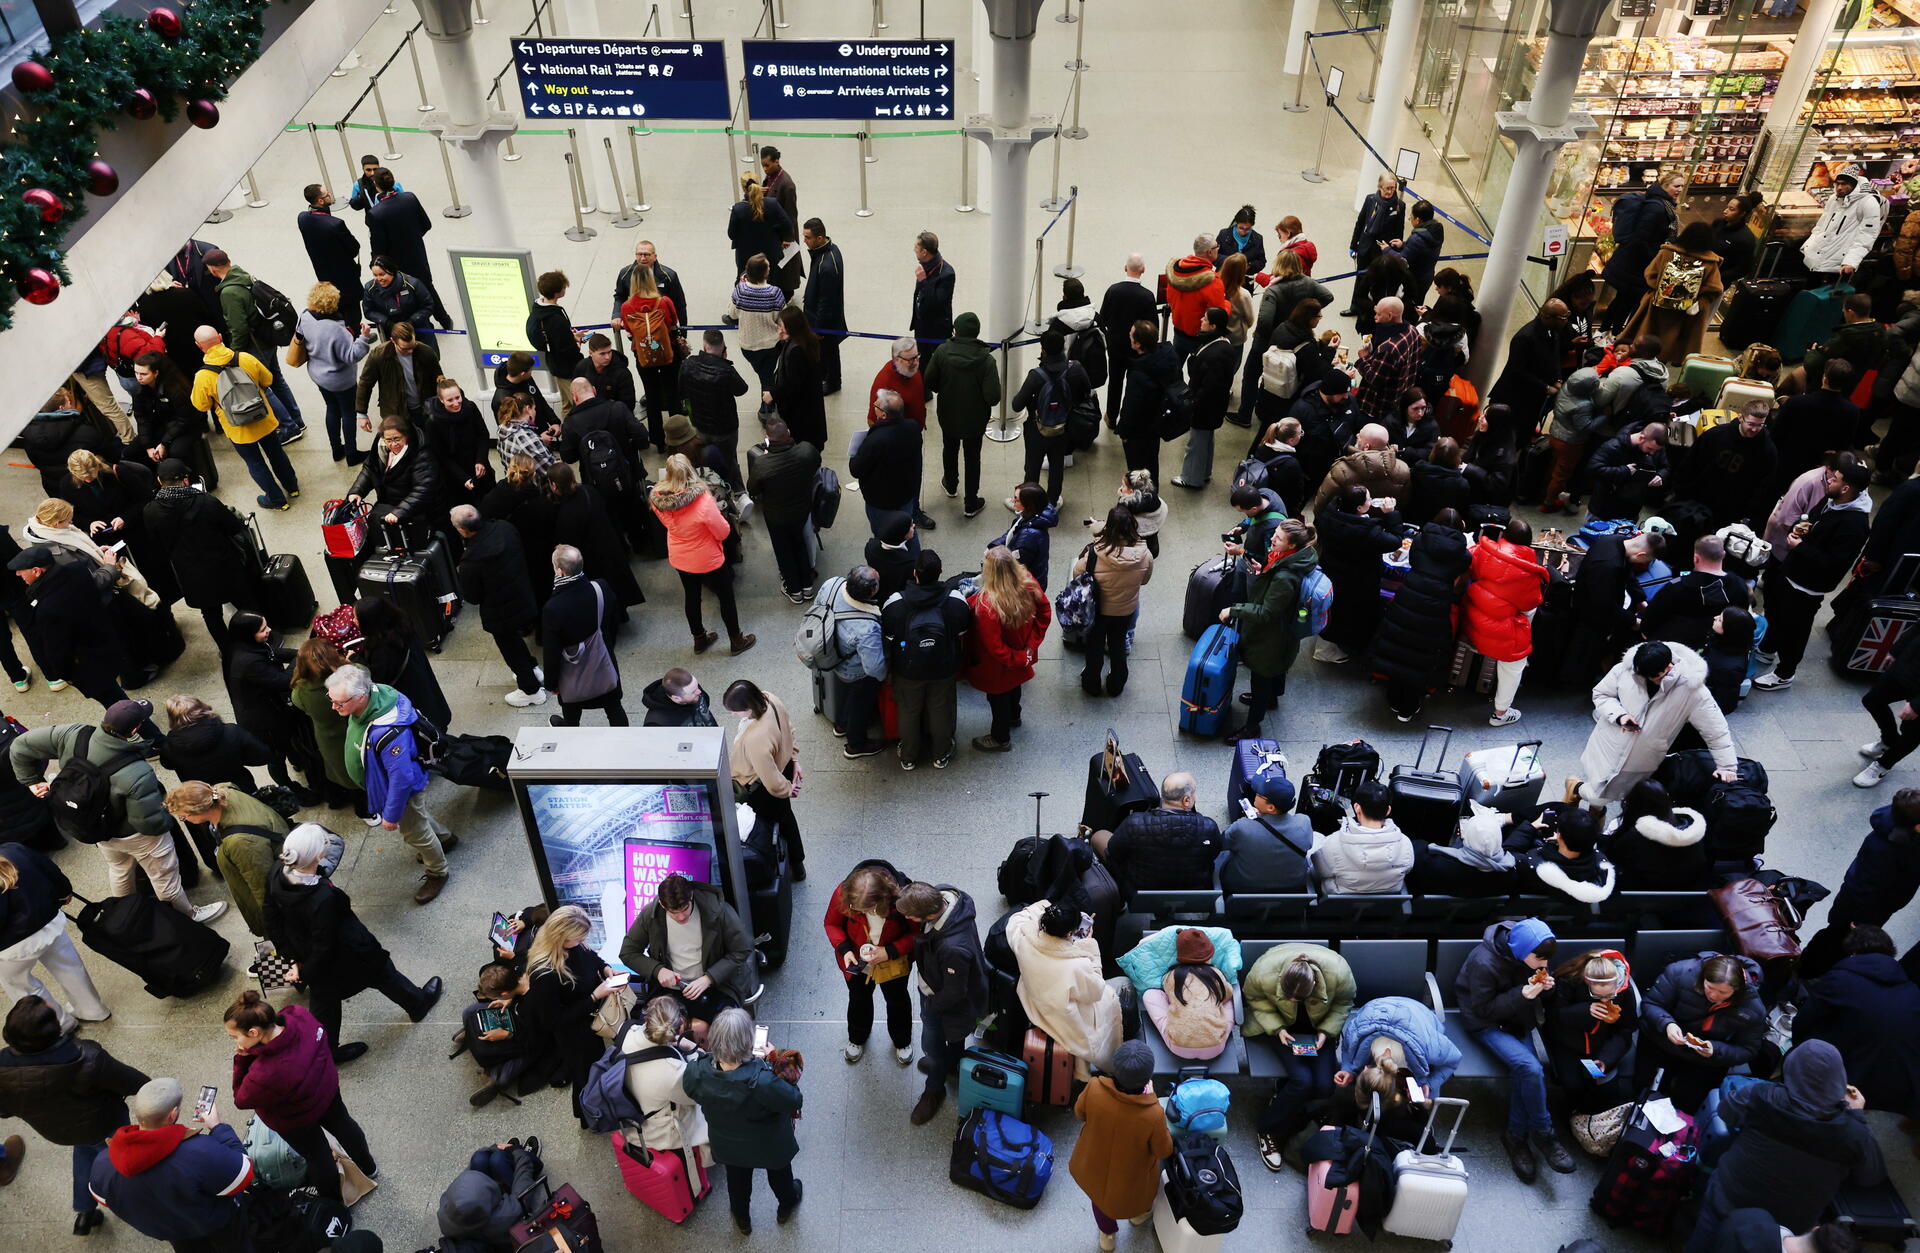 Los británicos se enfrentan al caos en los viajes por Año Nuevo, porque decenas de miles de pasajeros vieron cancelados sus trenes la mañana del sábado, poniendo en peligro sus planes.